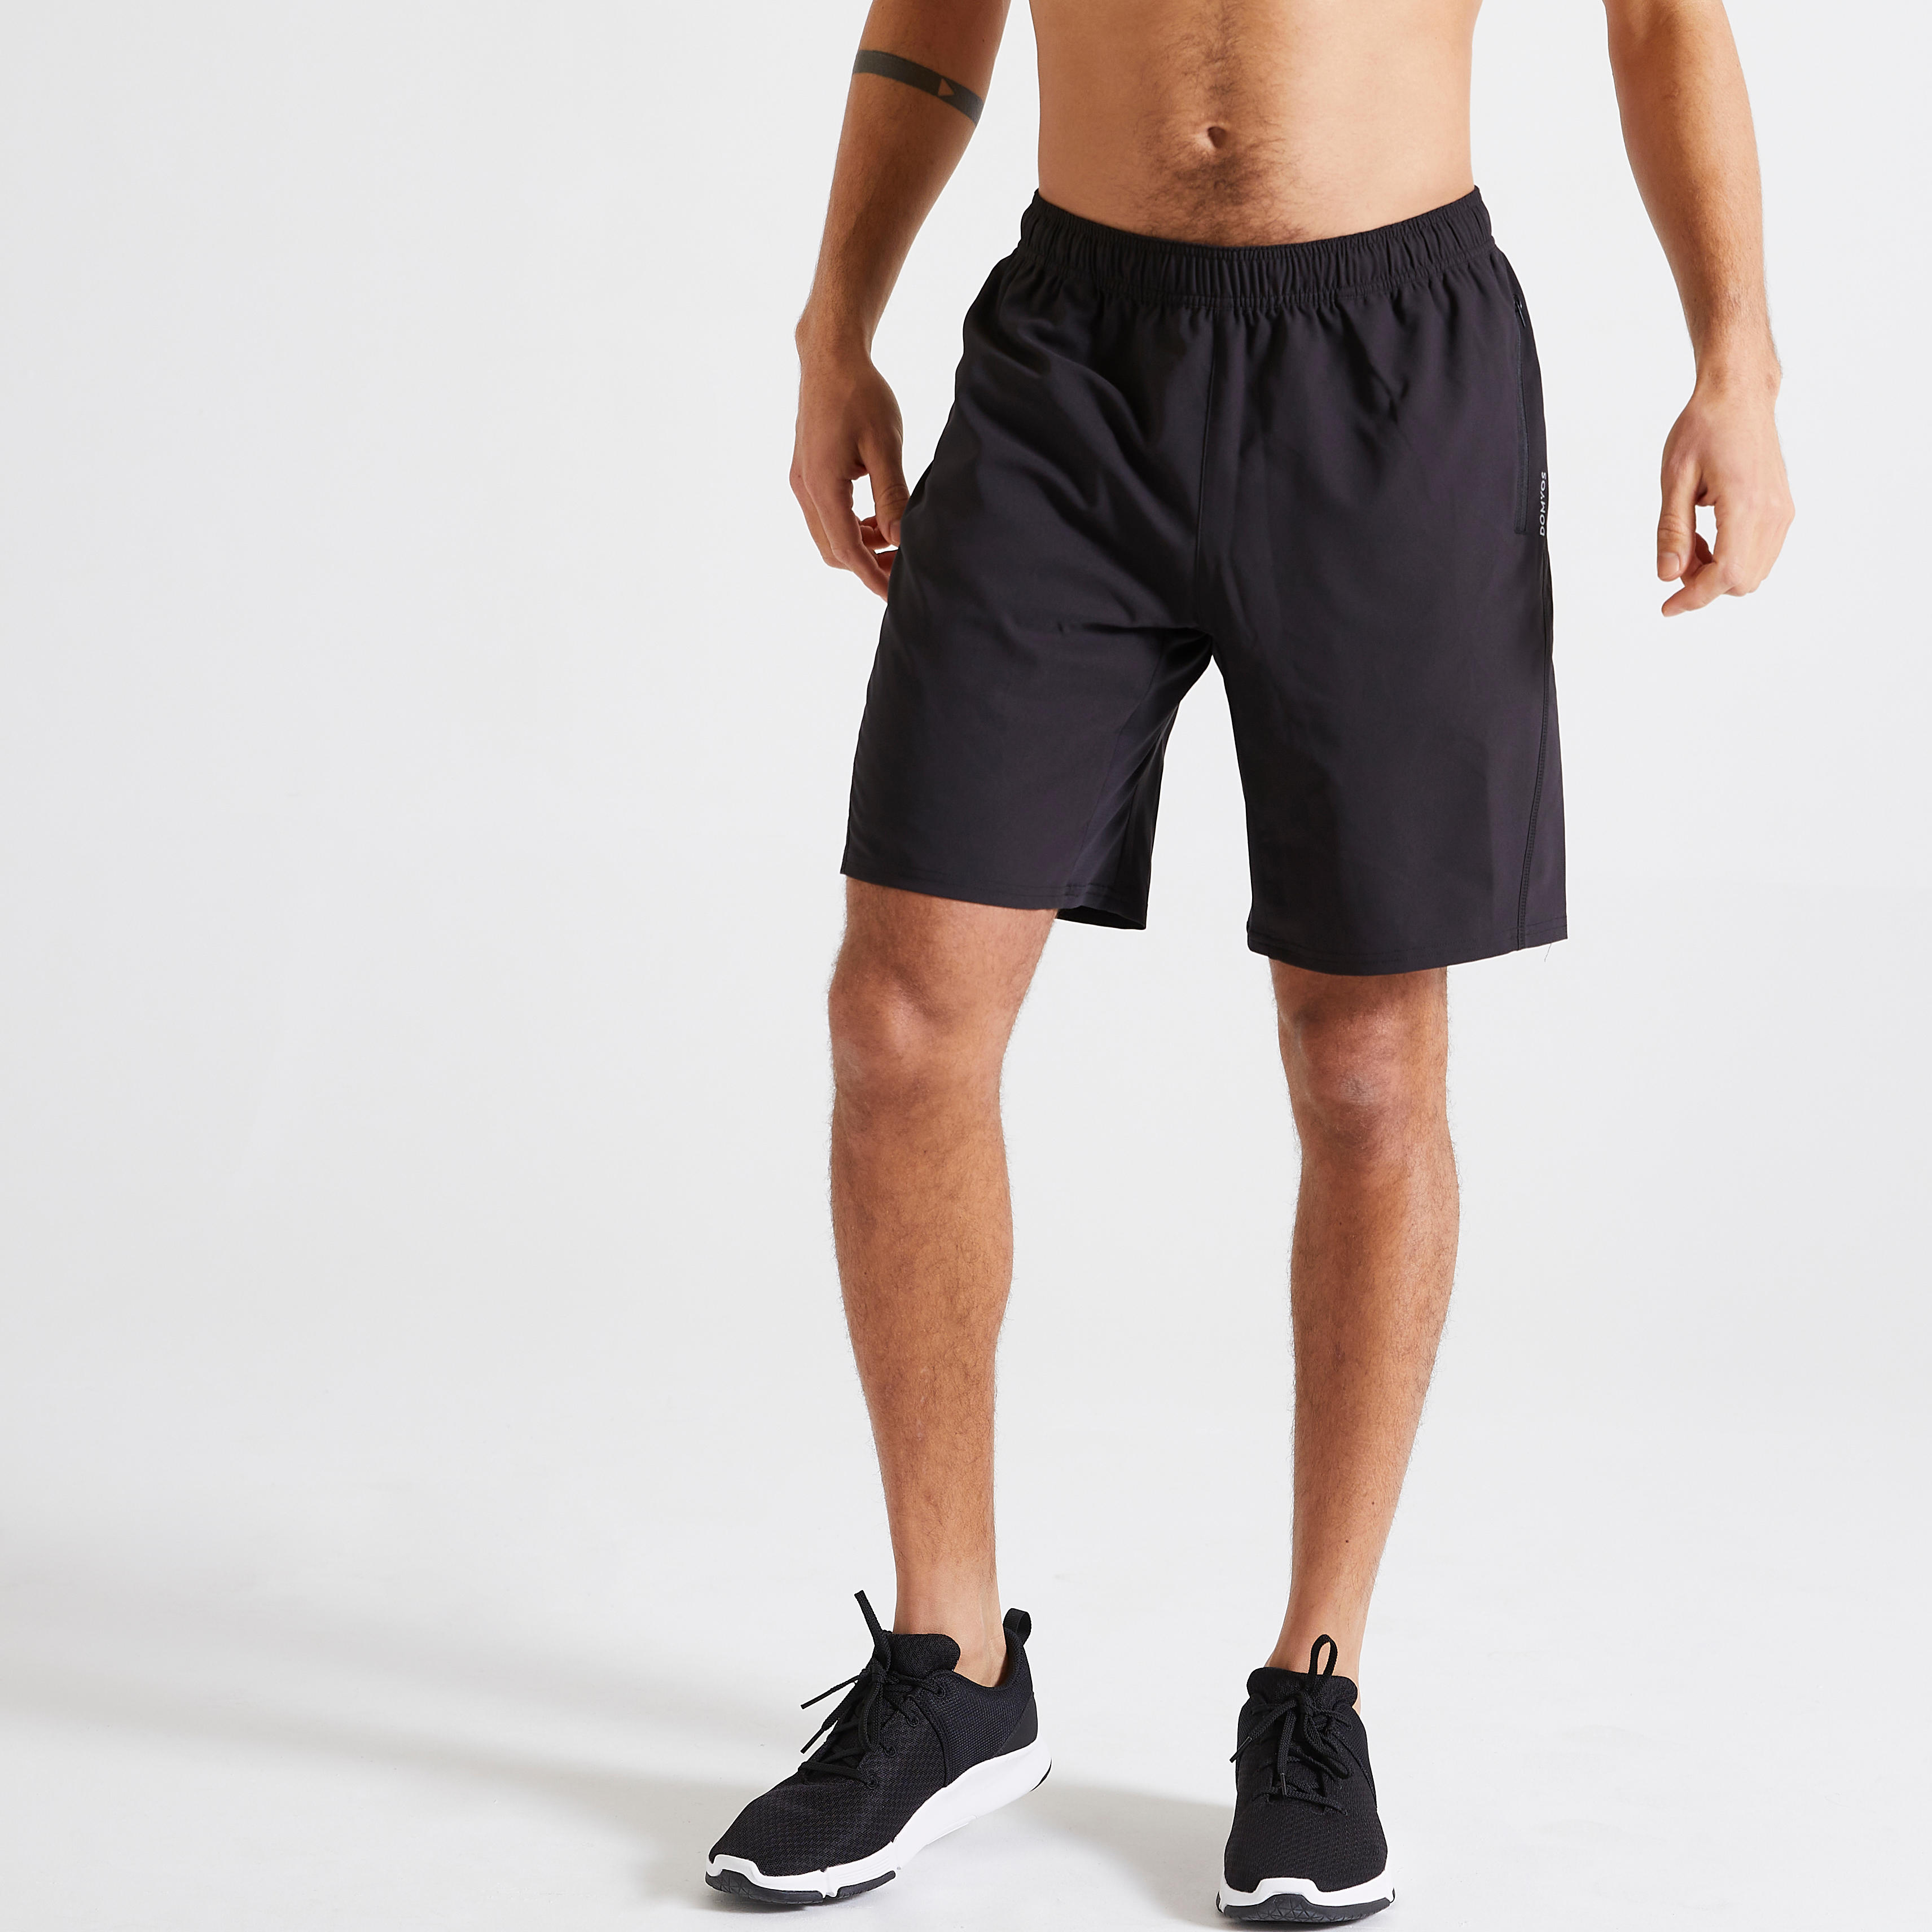 Pantalon scurt 120 fitness respirant cu buzunare cu fermoar negru bărbați decathlon.ro  Imbracaminte fitness barbati